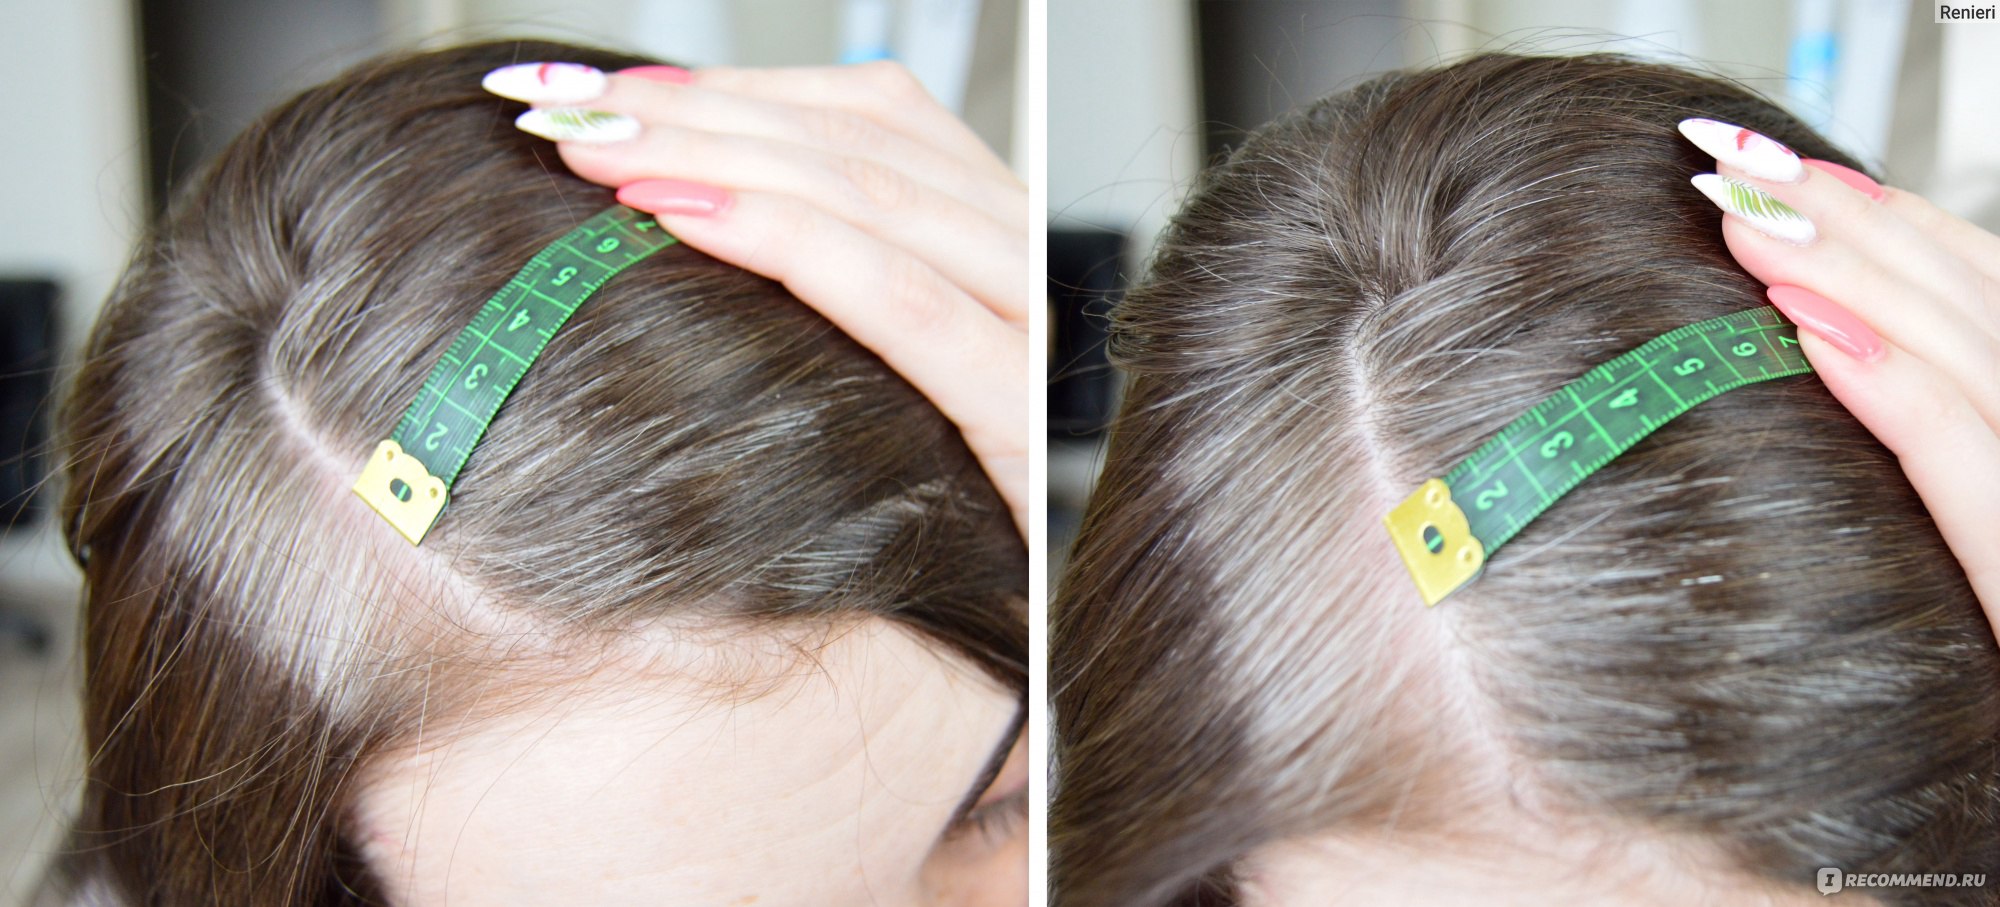 Как пользоваться мезороллером в домашних условиях для волос